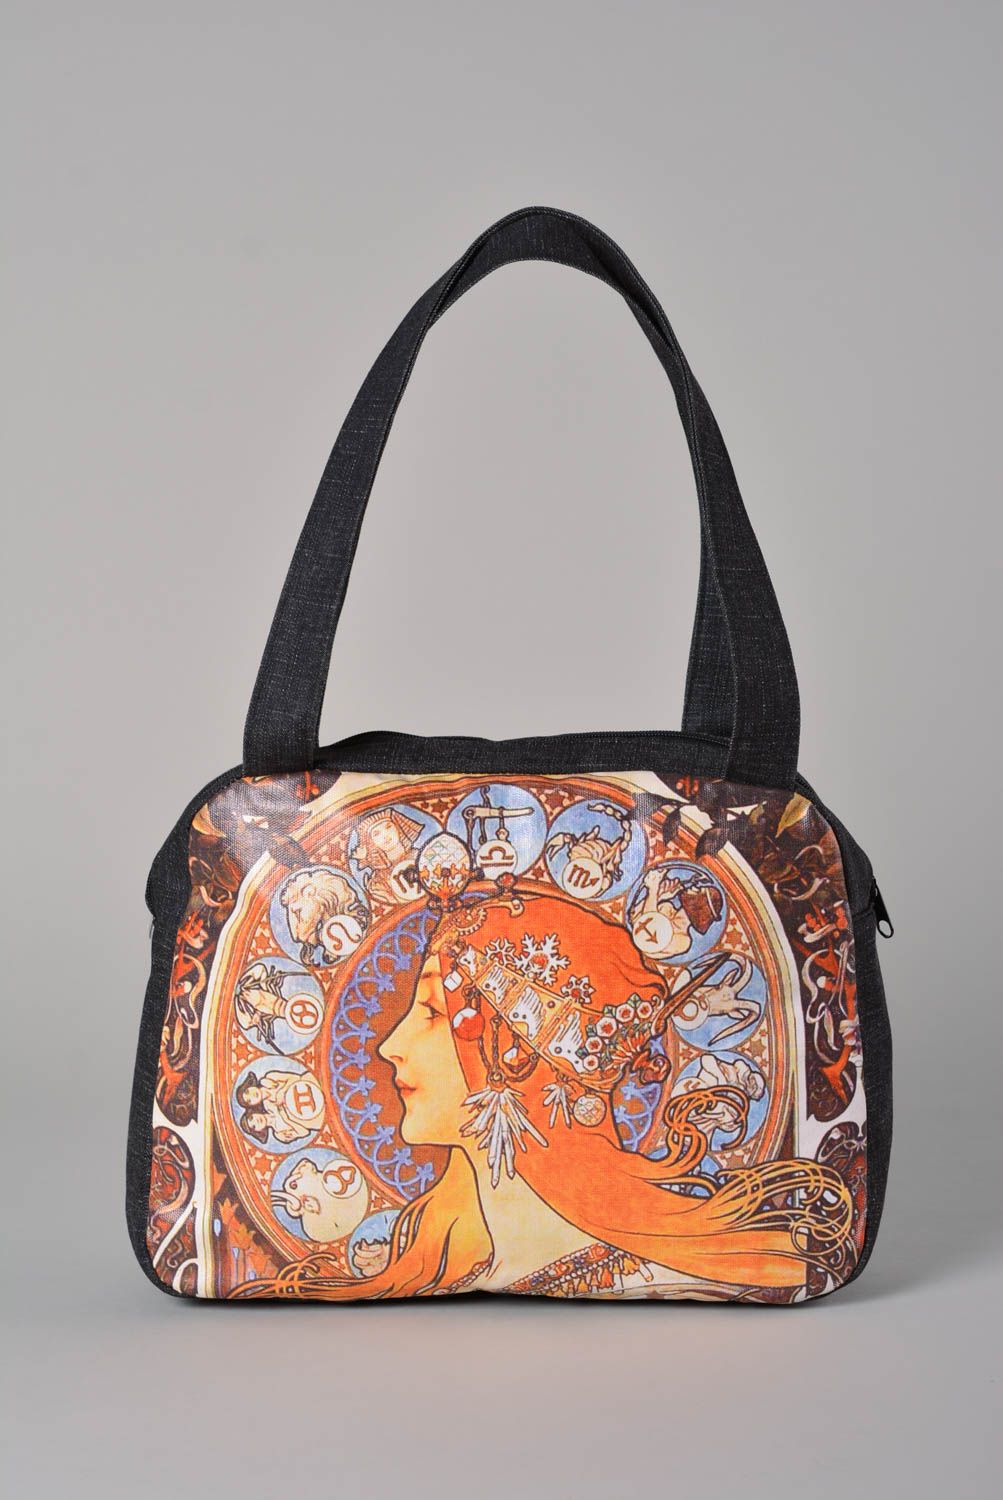 Сумка ручной работы сумка для женщины сумка с рисунком дизайнерская сумка фото 1